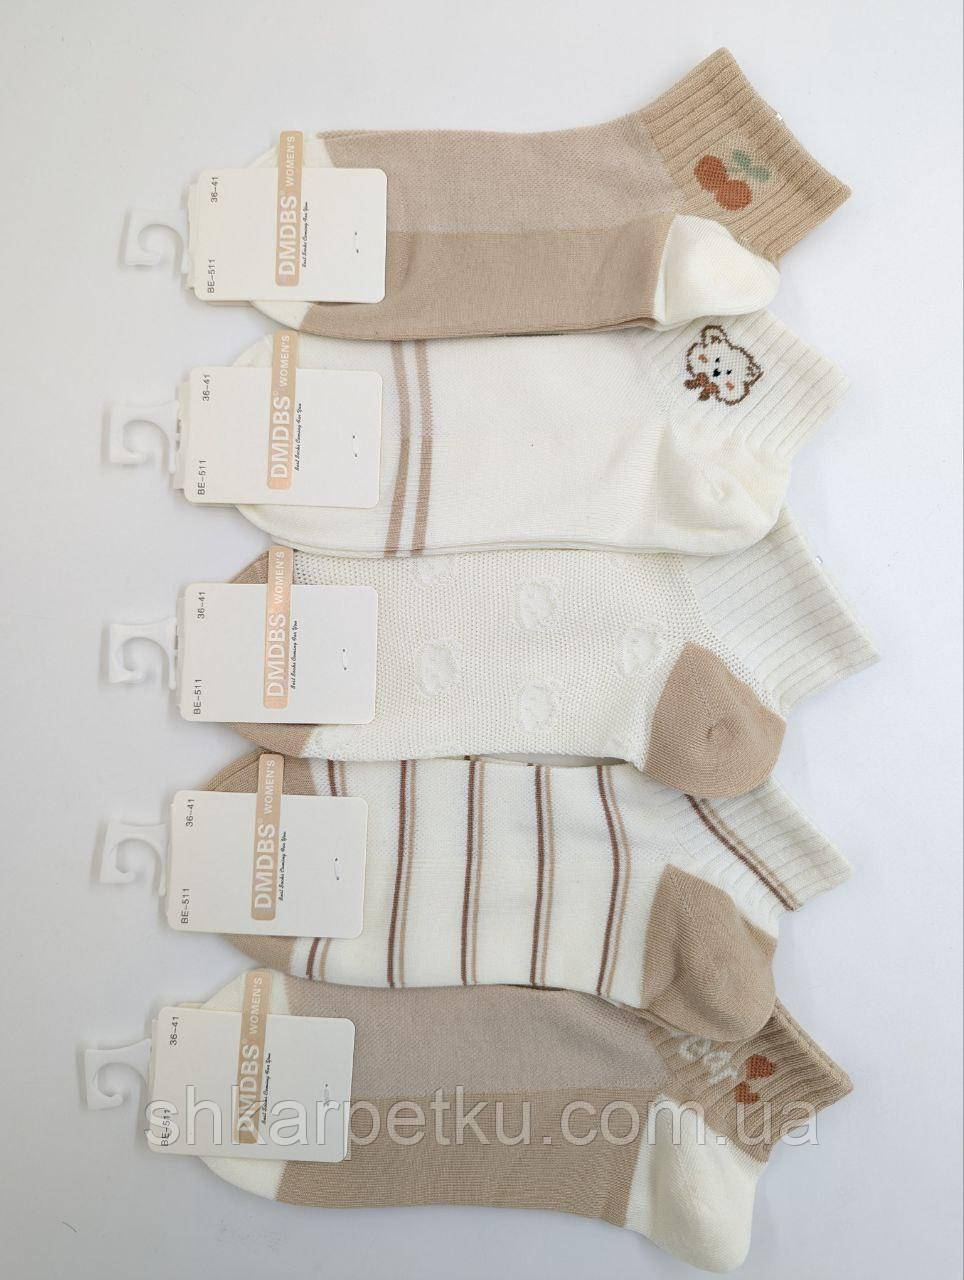 Жіночі короткі шкарпетки DMDBS сітка, літні з ведмежатком Bear, розмір 36-41, 10 пар/уп. асорті